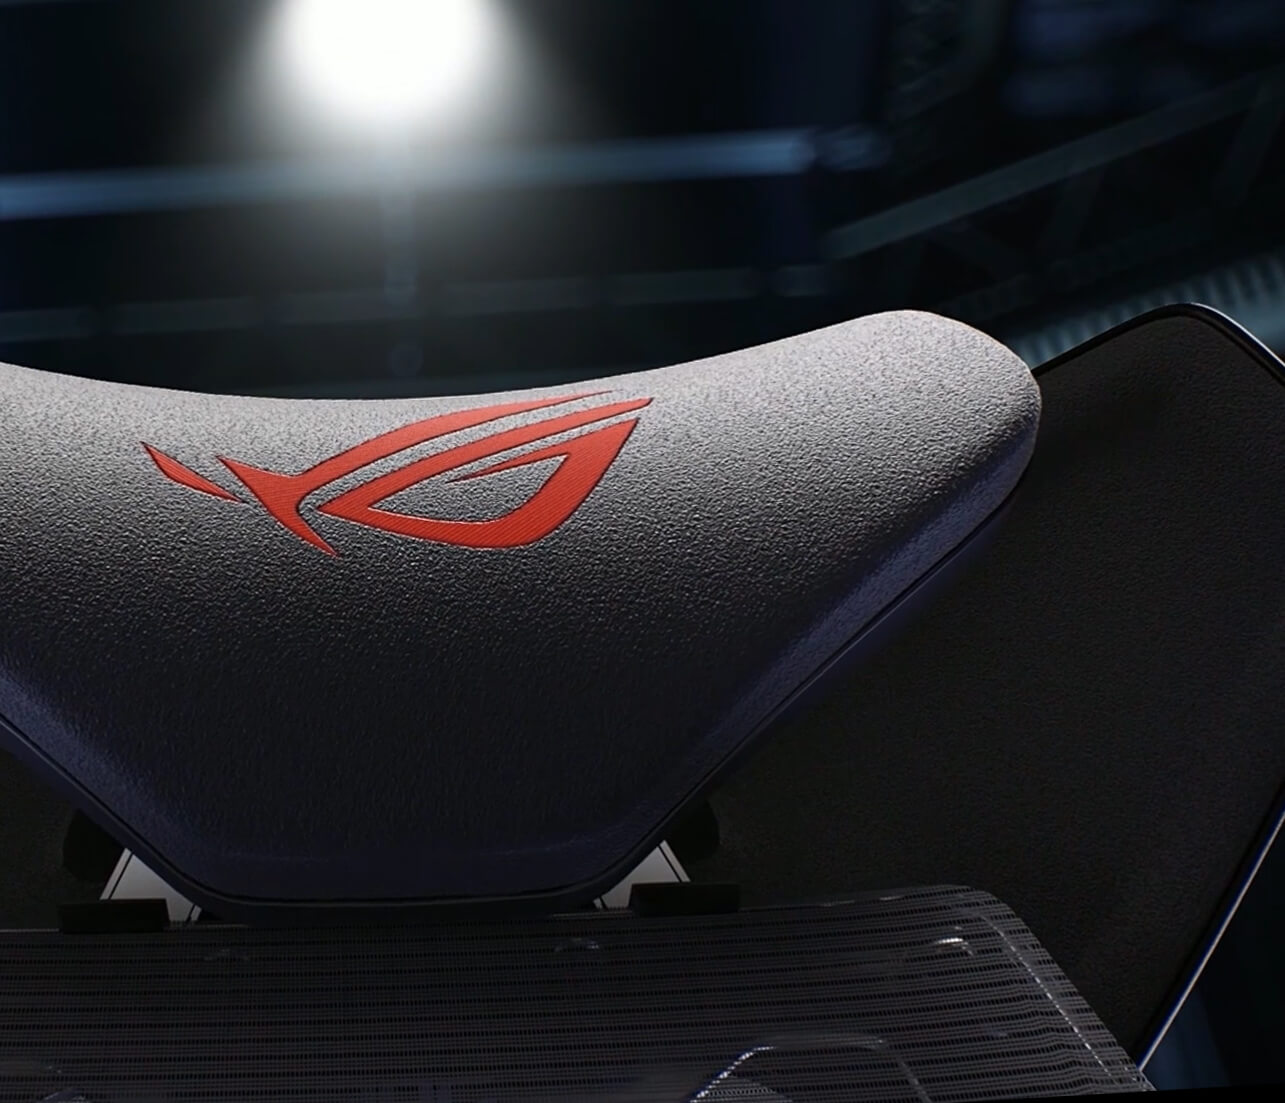 ROG Destrier Ergo Gaming Chair close-up